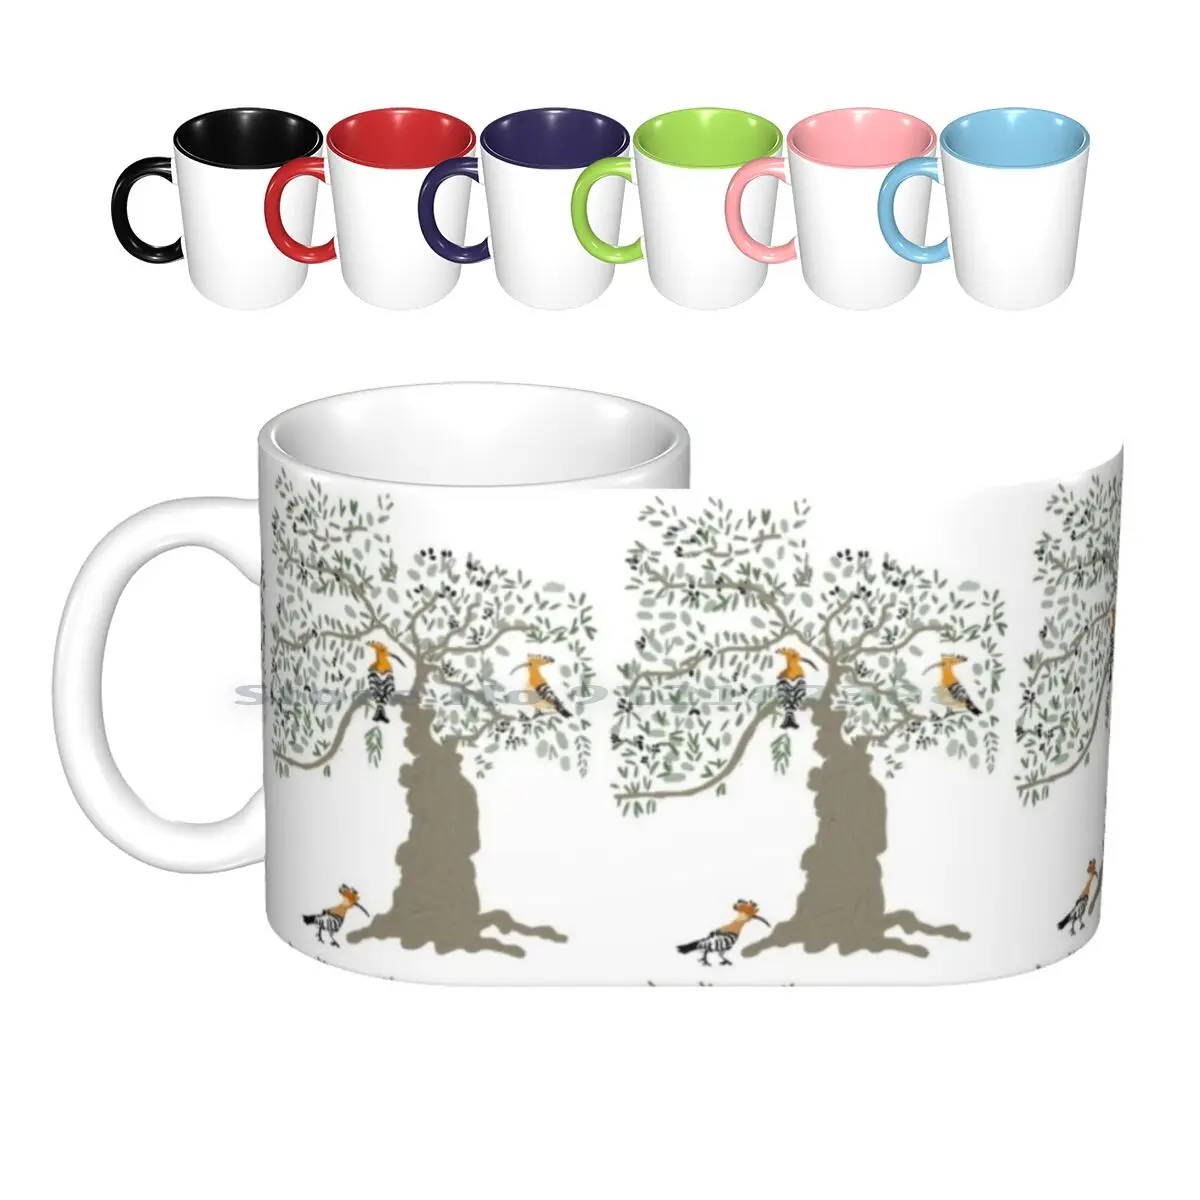 Hoopoe Birds In Tree Ceramic Mugs Coffee Cups Milk Tea Mug Hoopoes Olive Trees Olives Mediterranean Birds Nature Spain Creative